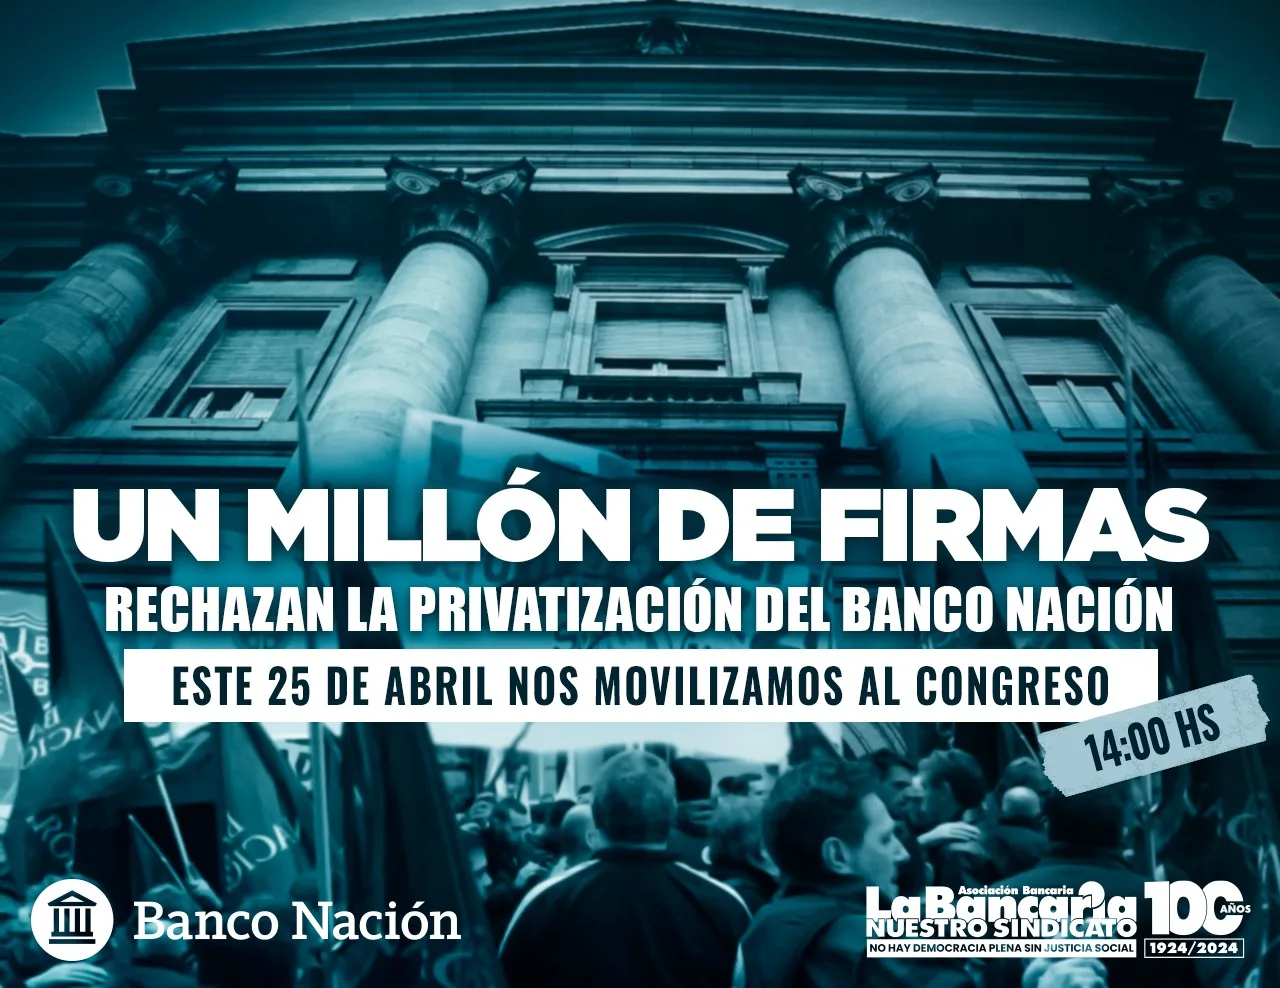 UN MILLÓN DE FIRMAS RECHAZAN LA PRIVATIZACIÓN DEL BANCO NACIÓN!!!